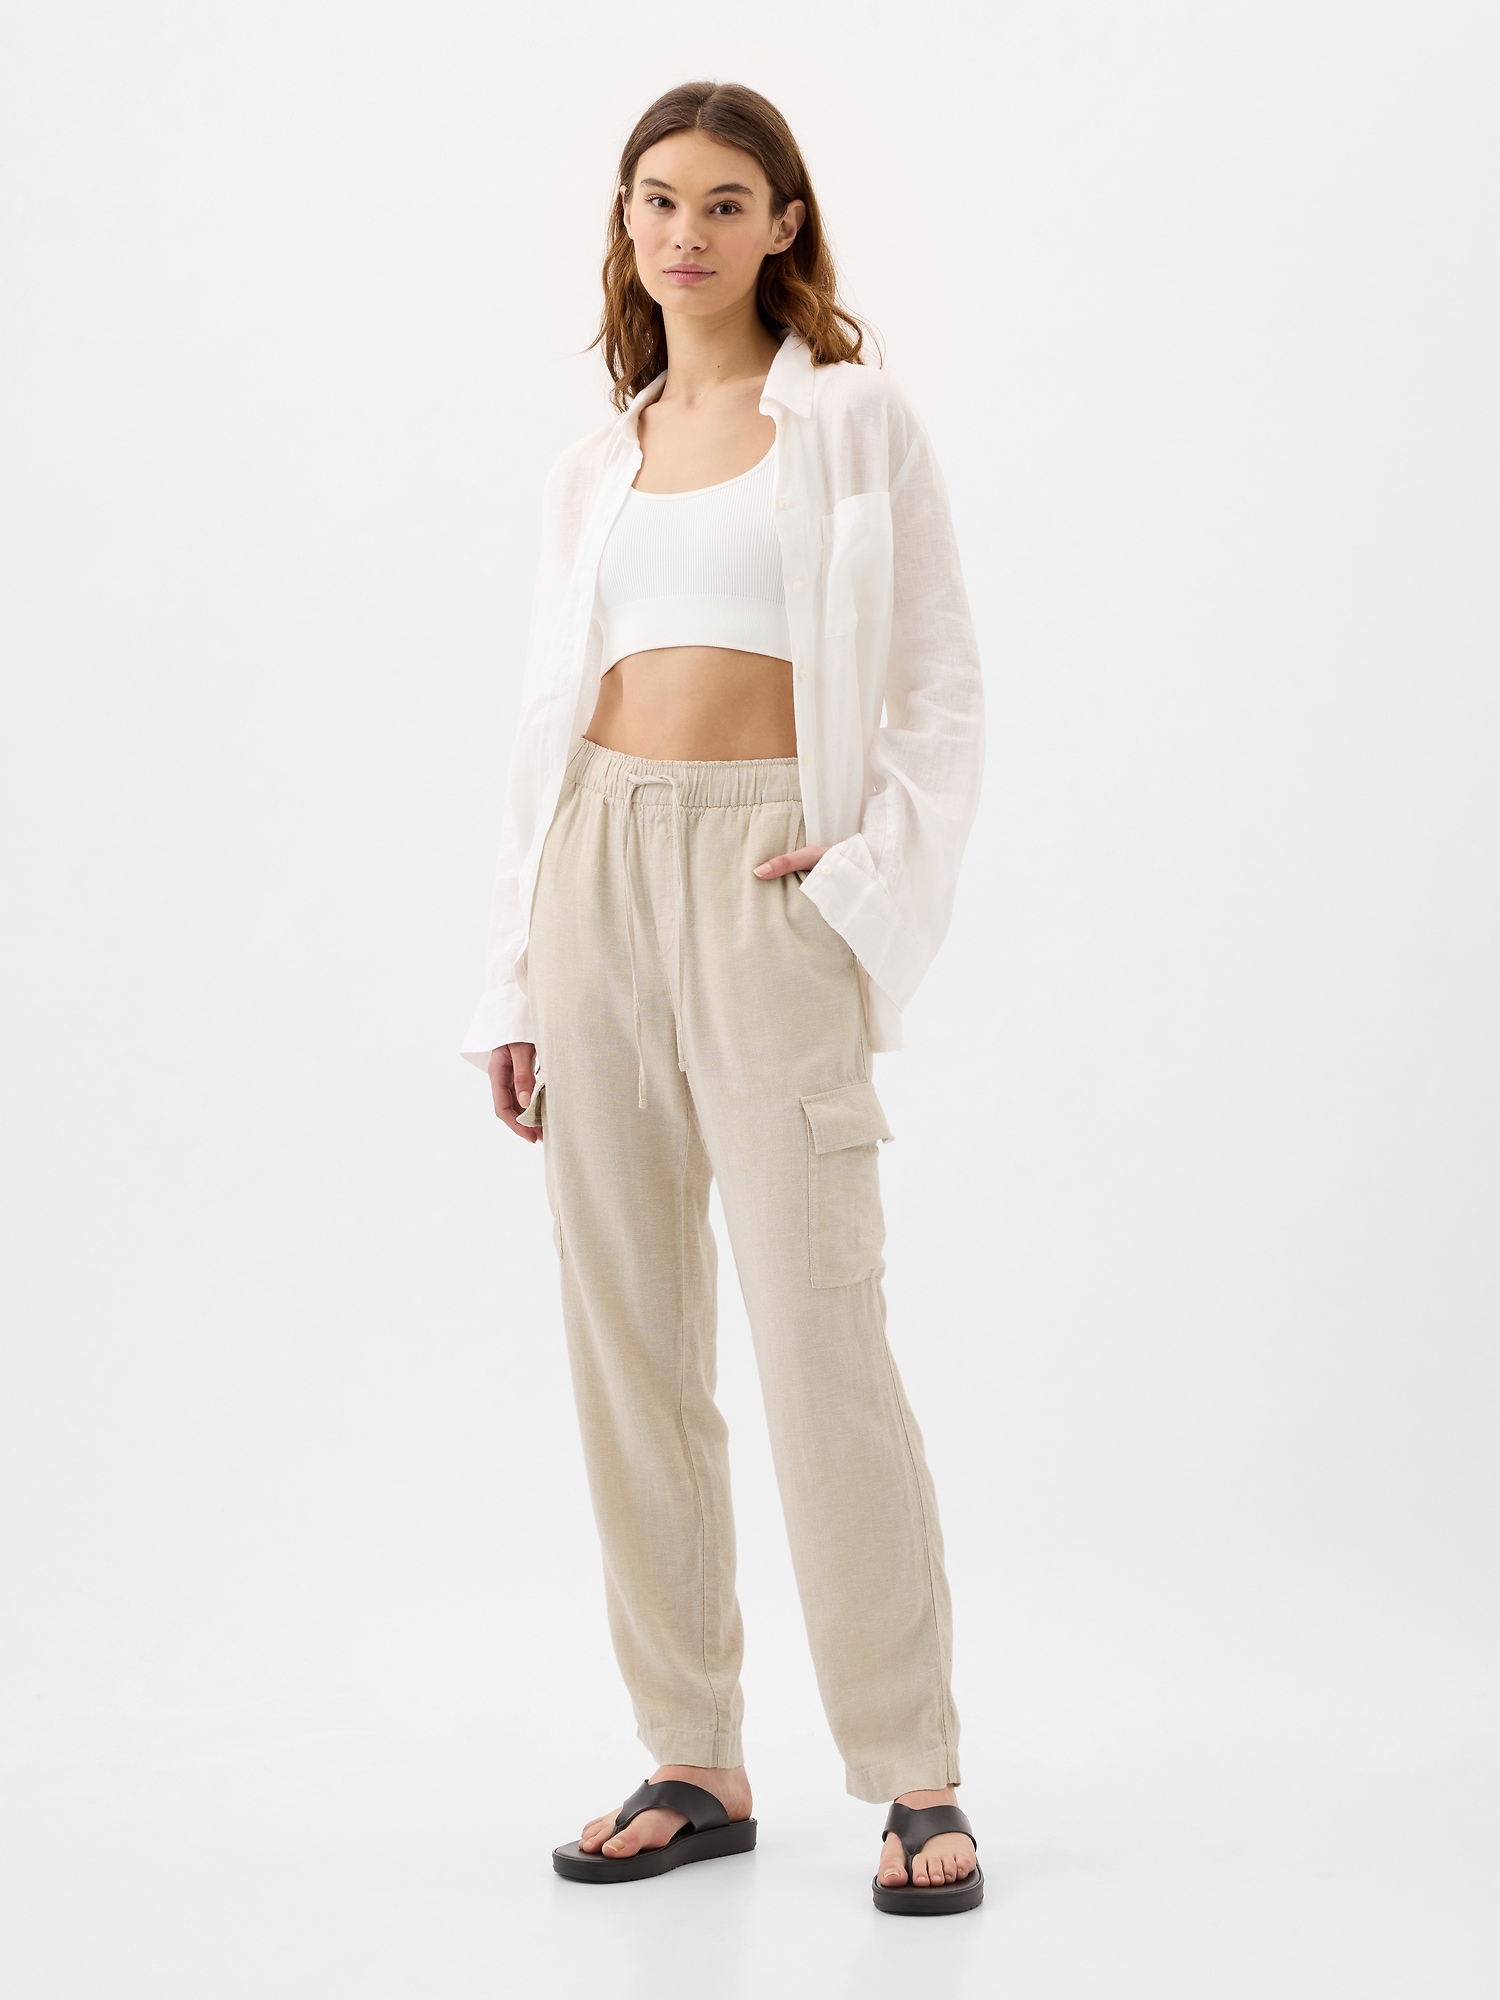 2021 Women Pants Fashion Linen Cotton Solid Elastic Waist Trousers Fe